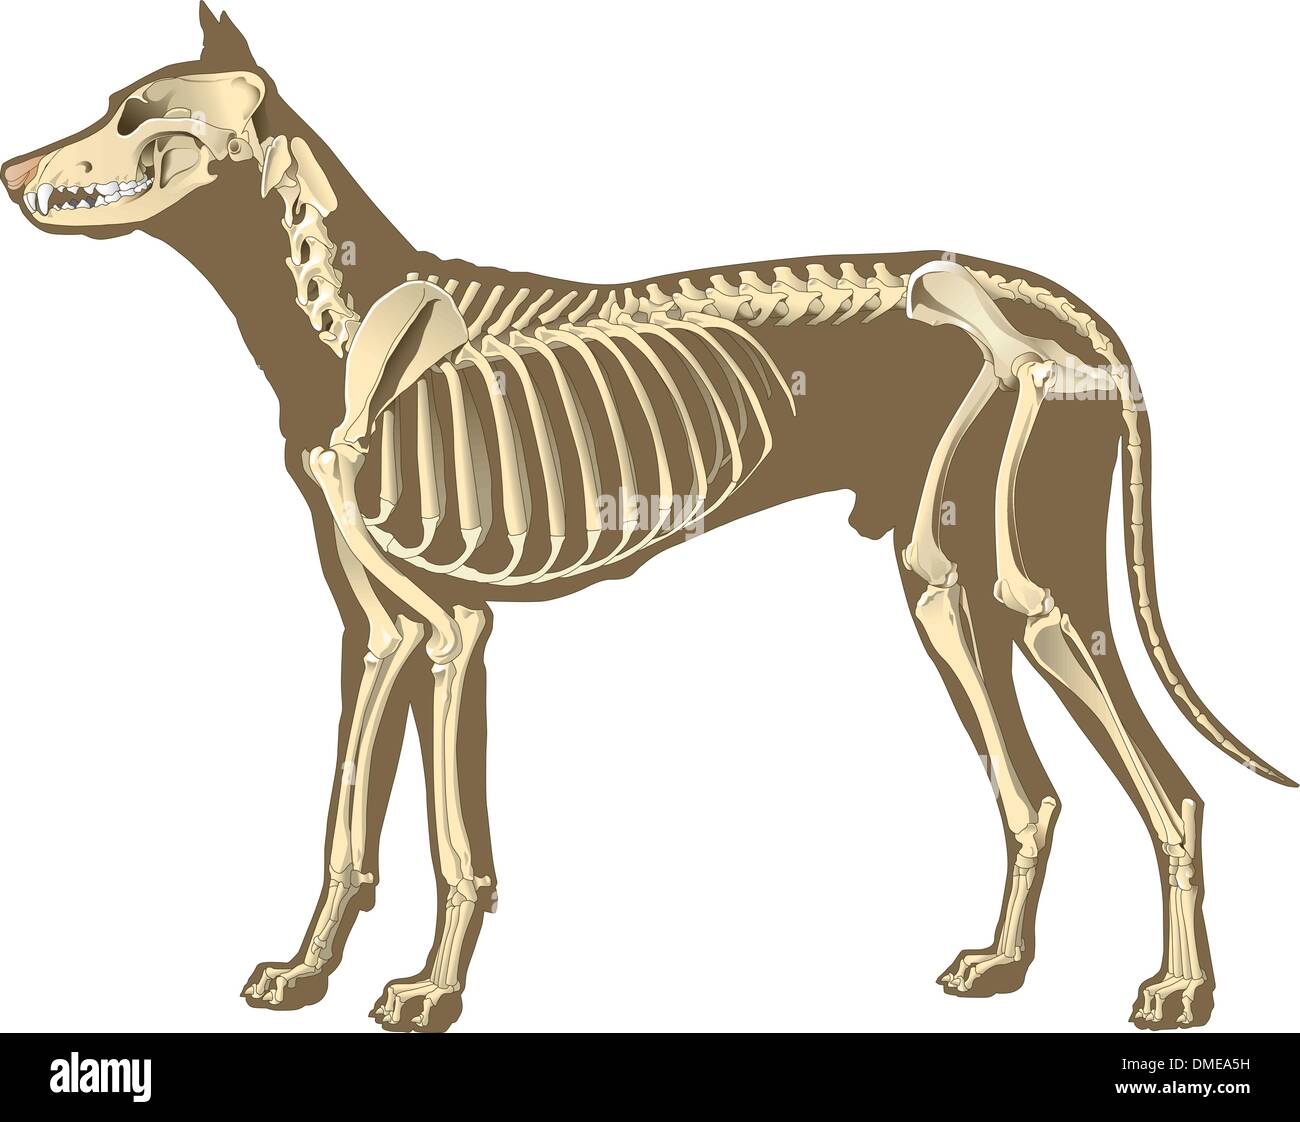 Skelett des Hundes Abschnitt Alamy